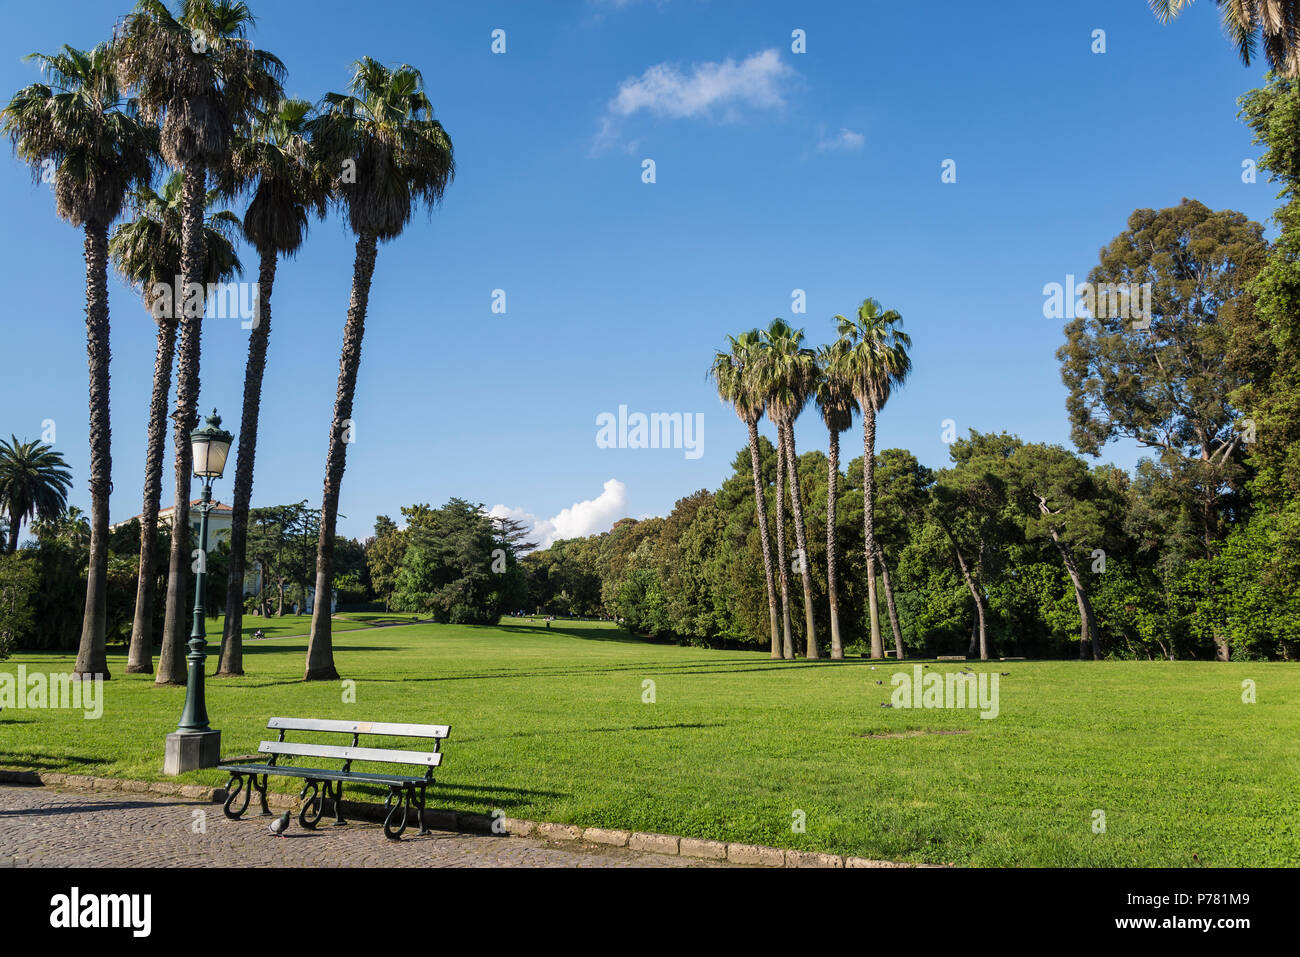 Capodimonte Park, hilltop Bourbon royal park now public park, Naples, Italy Stock Photo